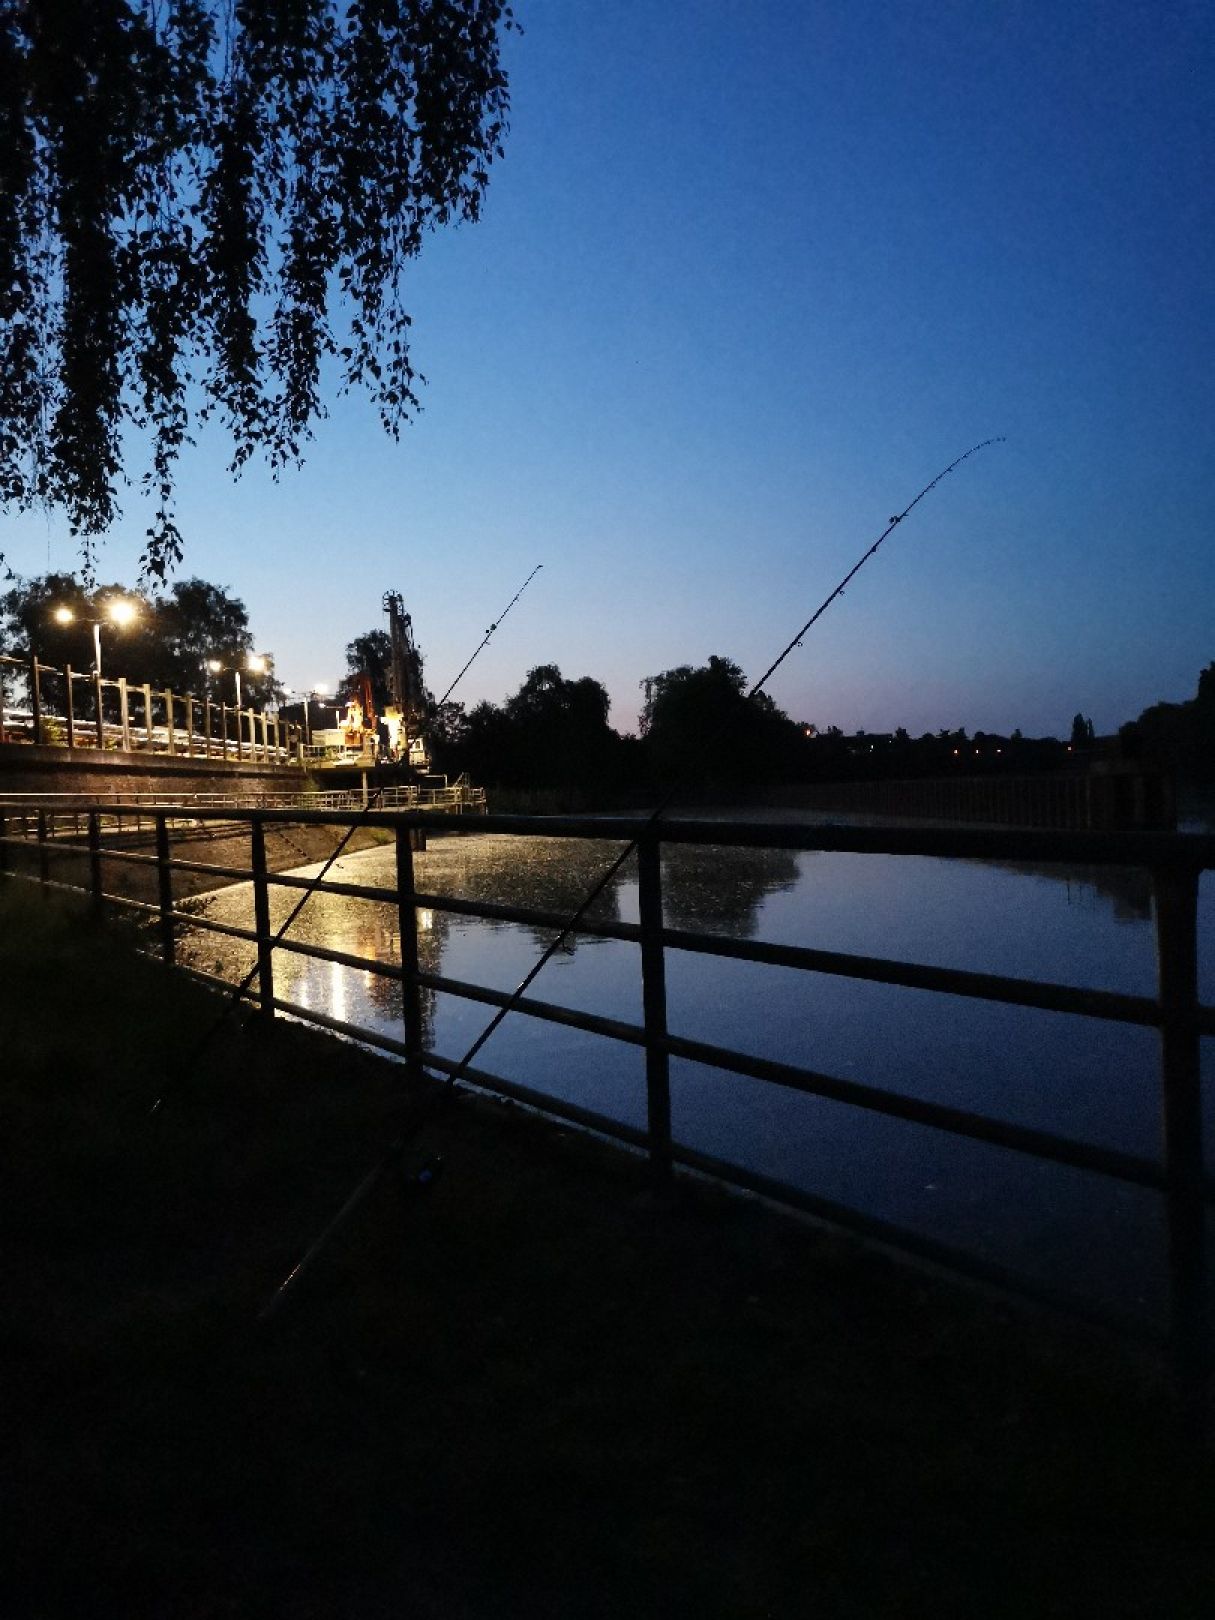 Main (Bischofsheim-Fechenheim) angeln